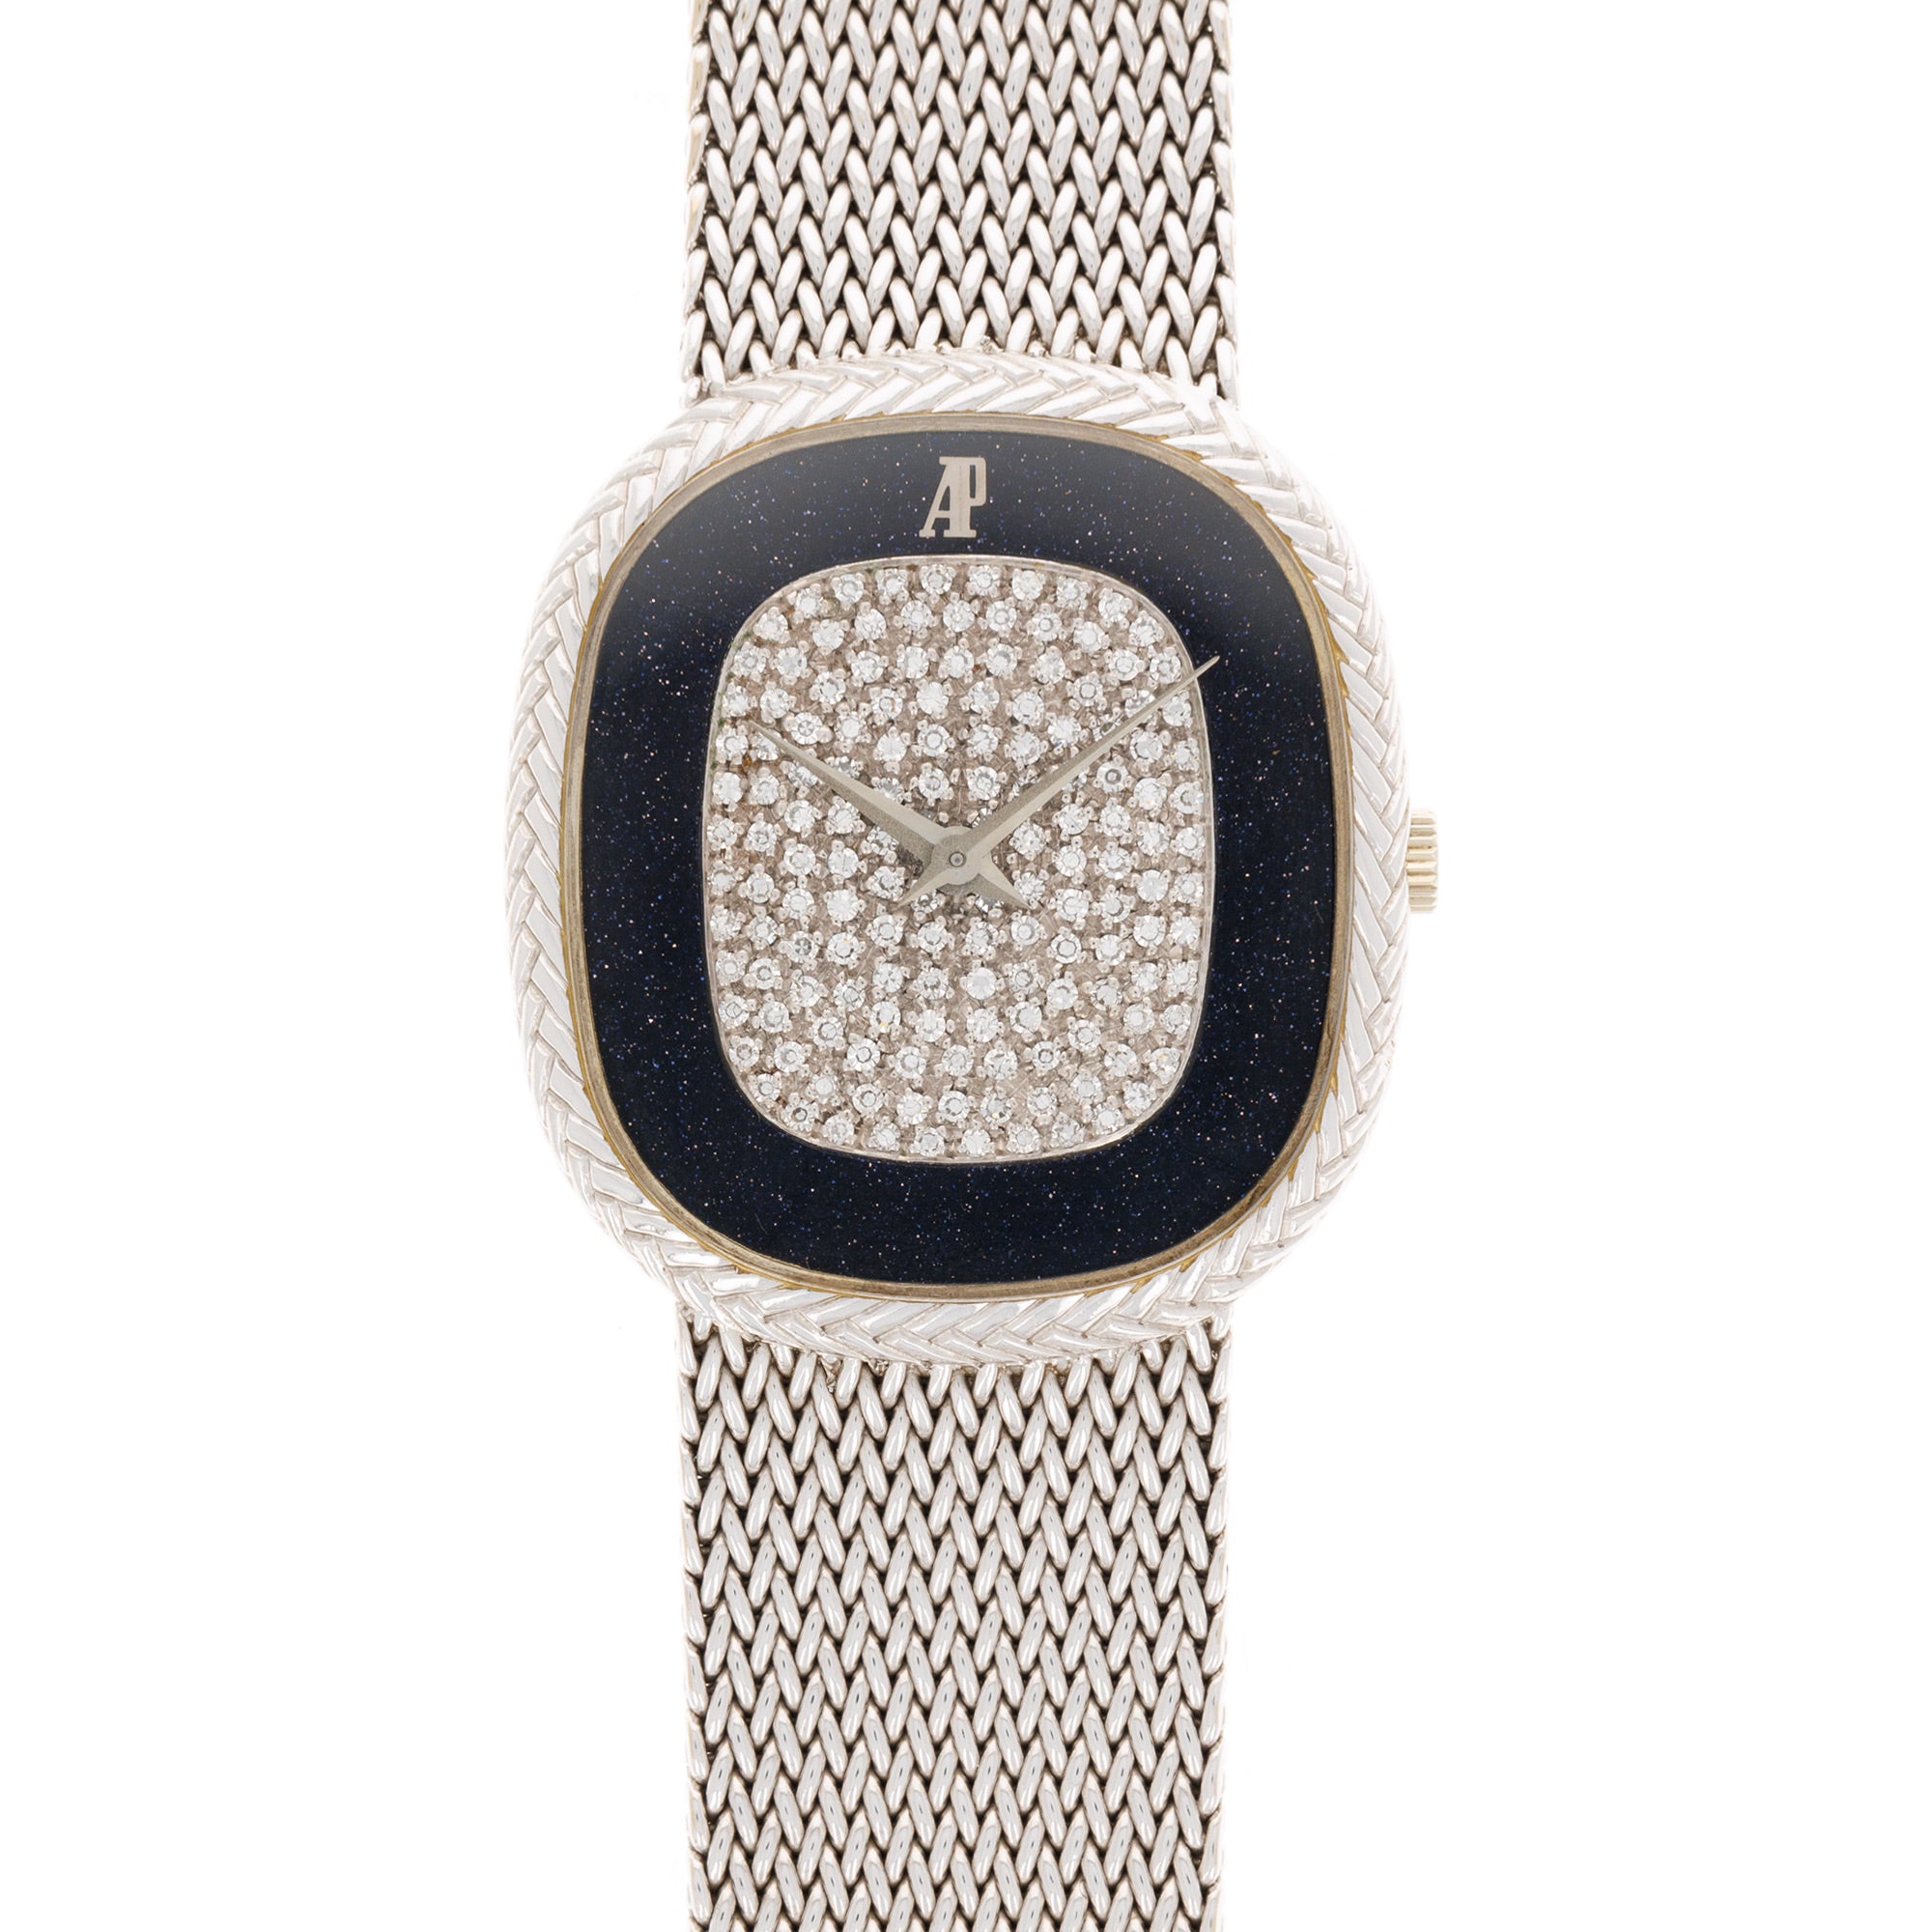 Audemars Piguet - Audemars Piguet White Gold Aventurine Watch - The Keystone Watches